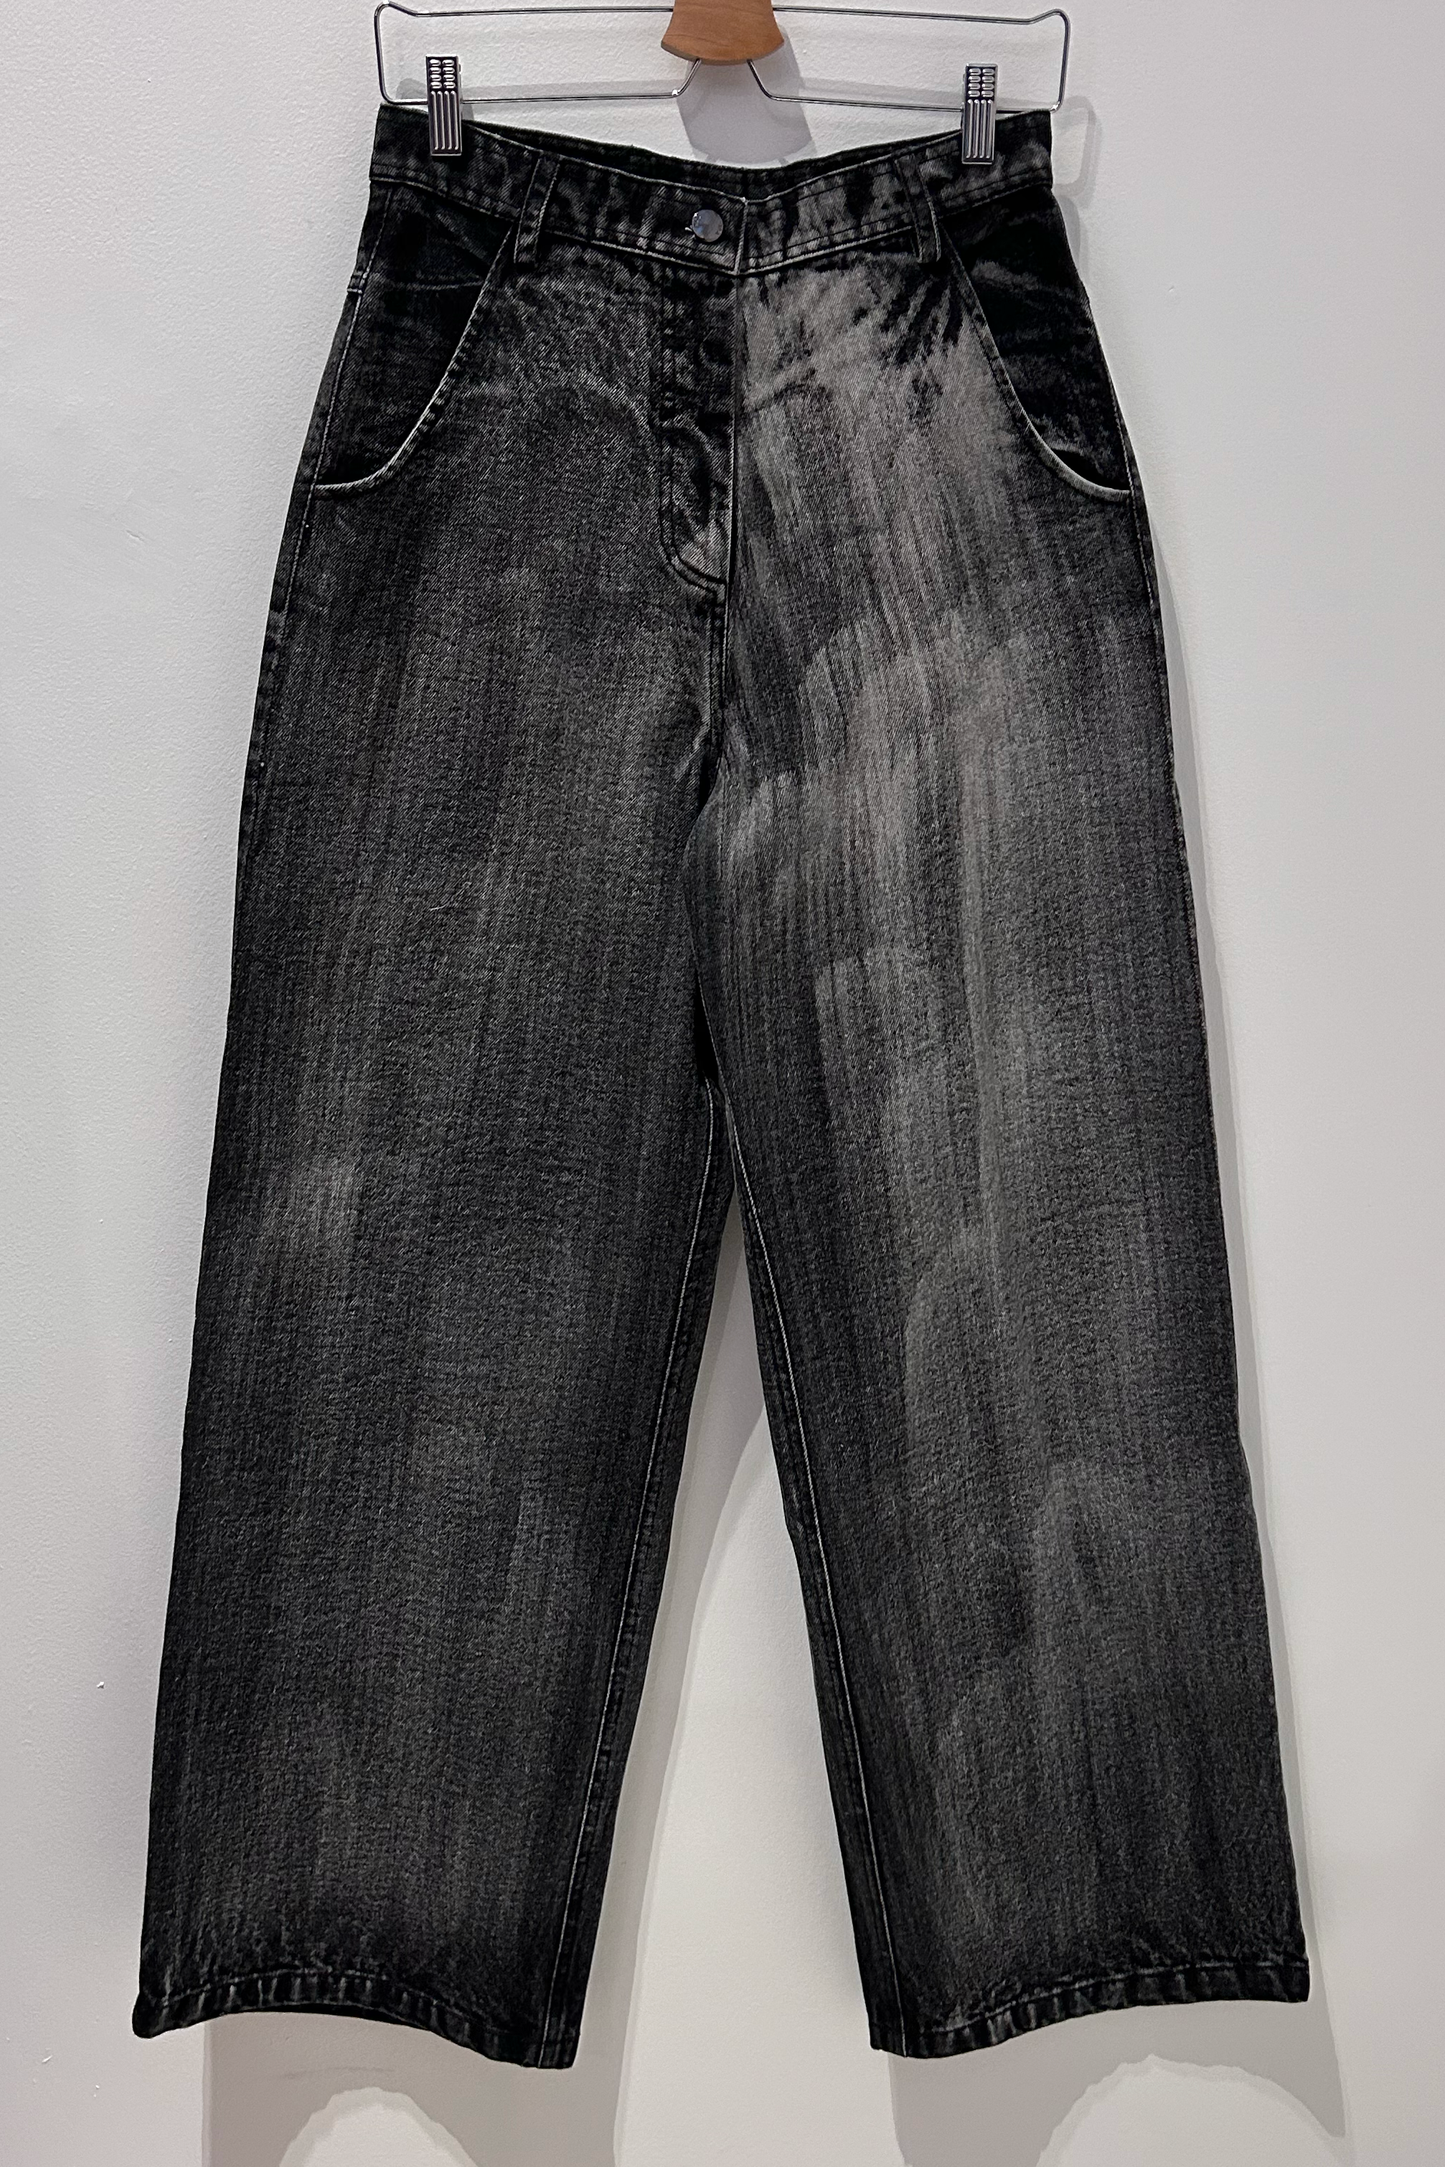 KGL - Washed Denim Pants: Black